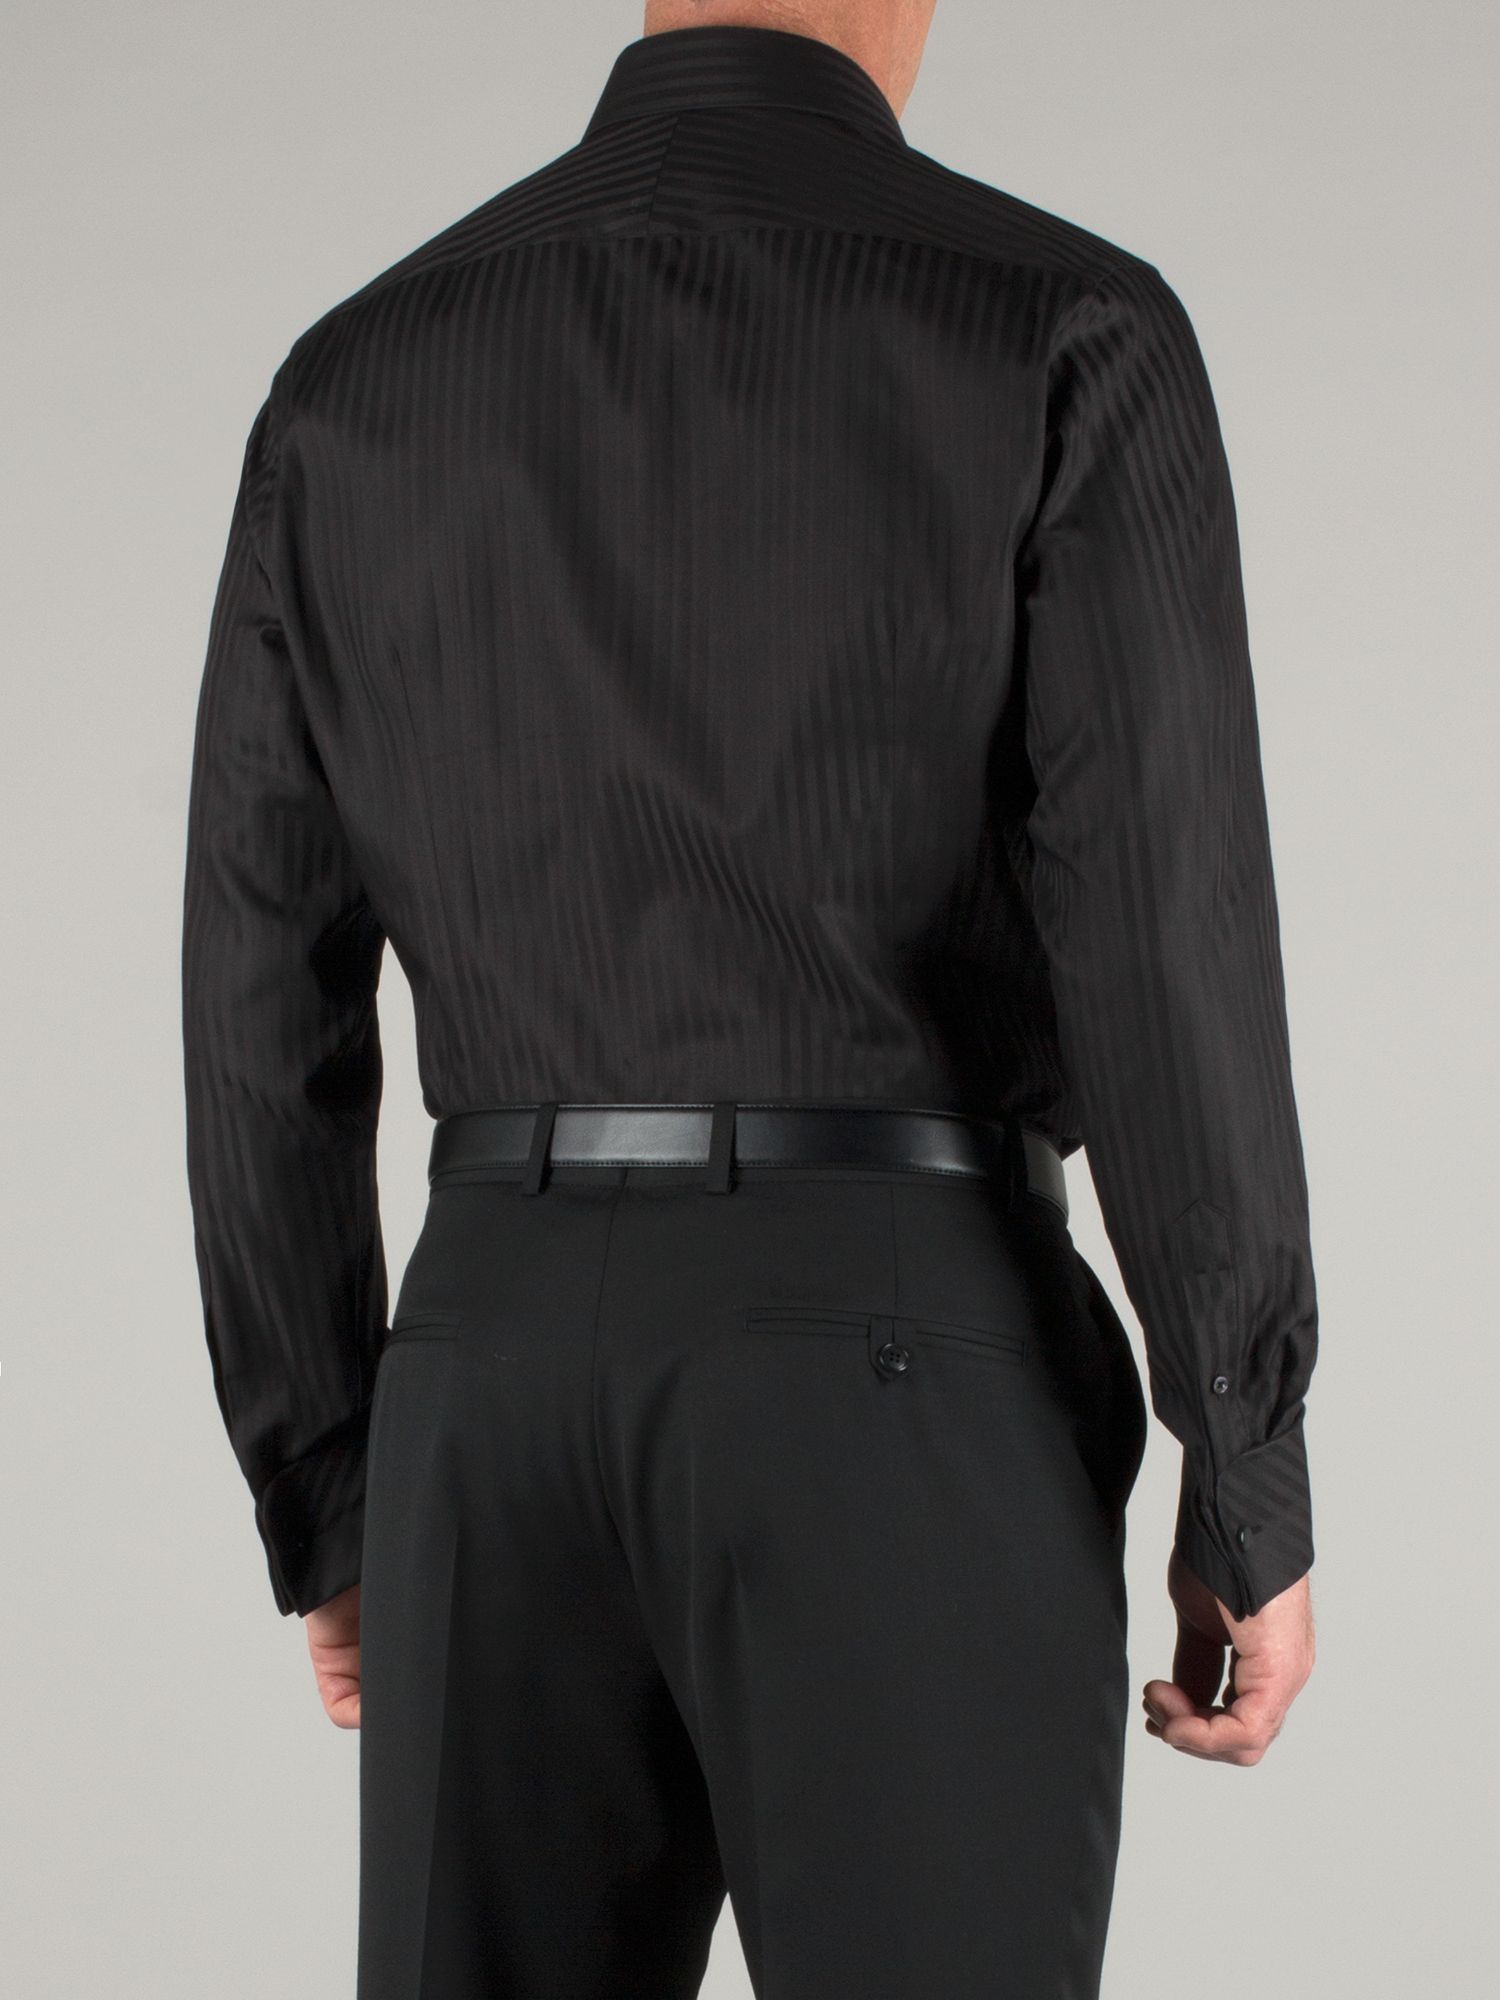 Alexandre savile row Black Self Stripe Shirt in Black for Men | Lyst